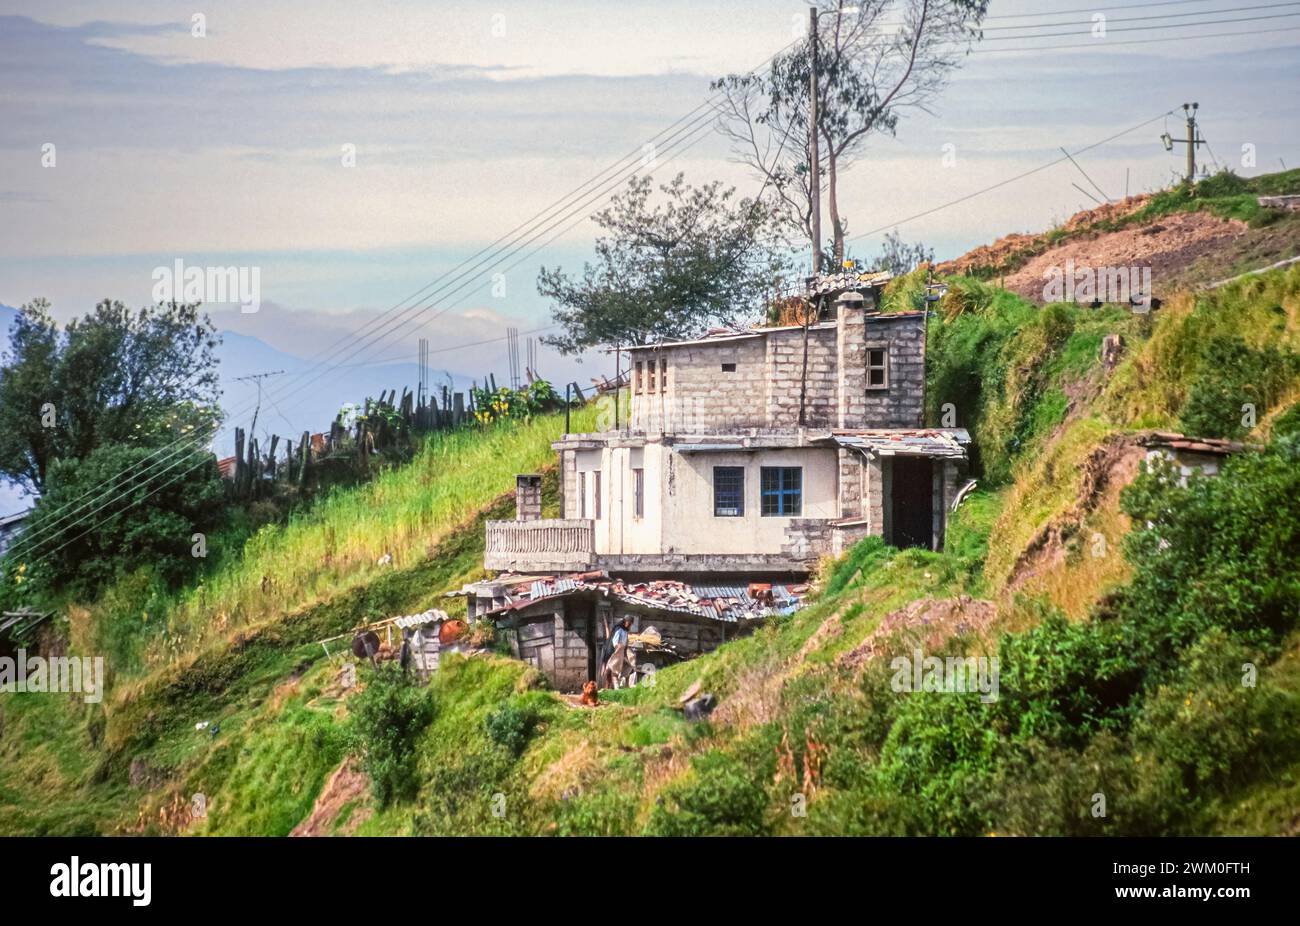 Ein baufälliges Haus in der Nähe des Cotopaxi-Nationalparks, außerhalb von Quito, Ecuador in Südamerika. Das Haus wurde mit Windblöcken nach oben erweitert, aber nicht mit dem Rendering fertig gestellt. Aufgenommen im Jahr 2000. Stockfoto